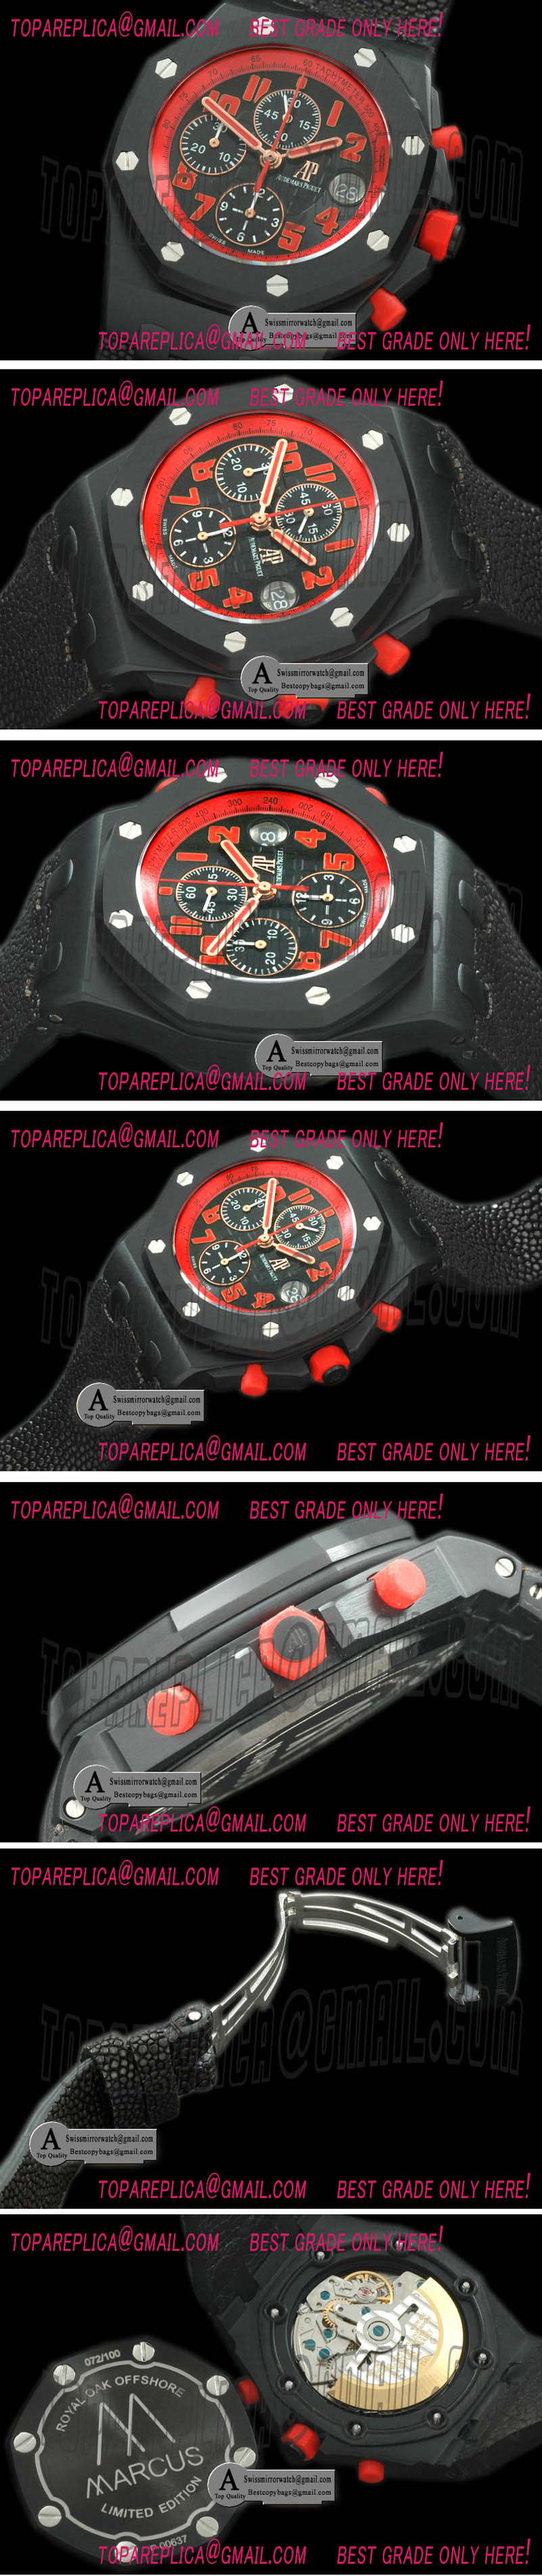 Audemars Piguet Royal Oak Chronograph DLC/Leather Black A-7750 Replica Watches